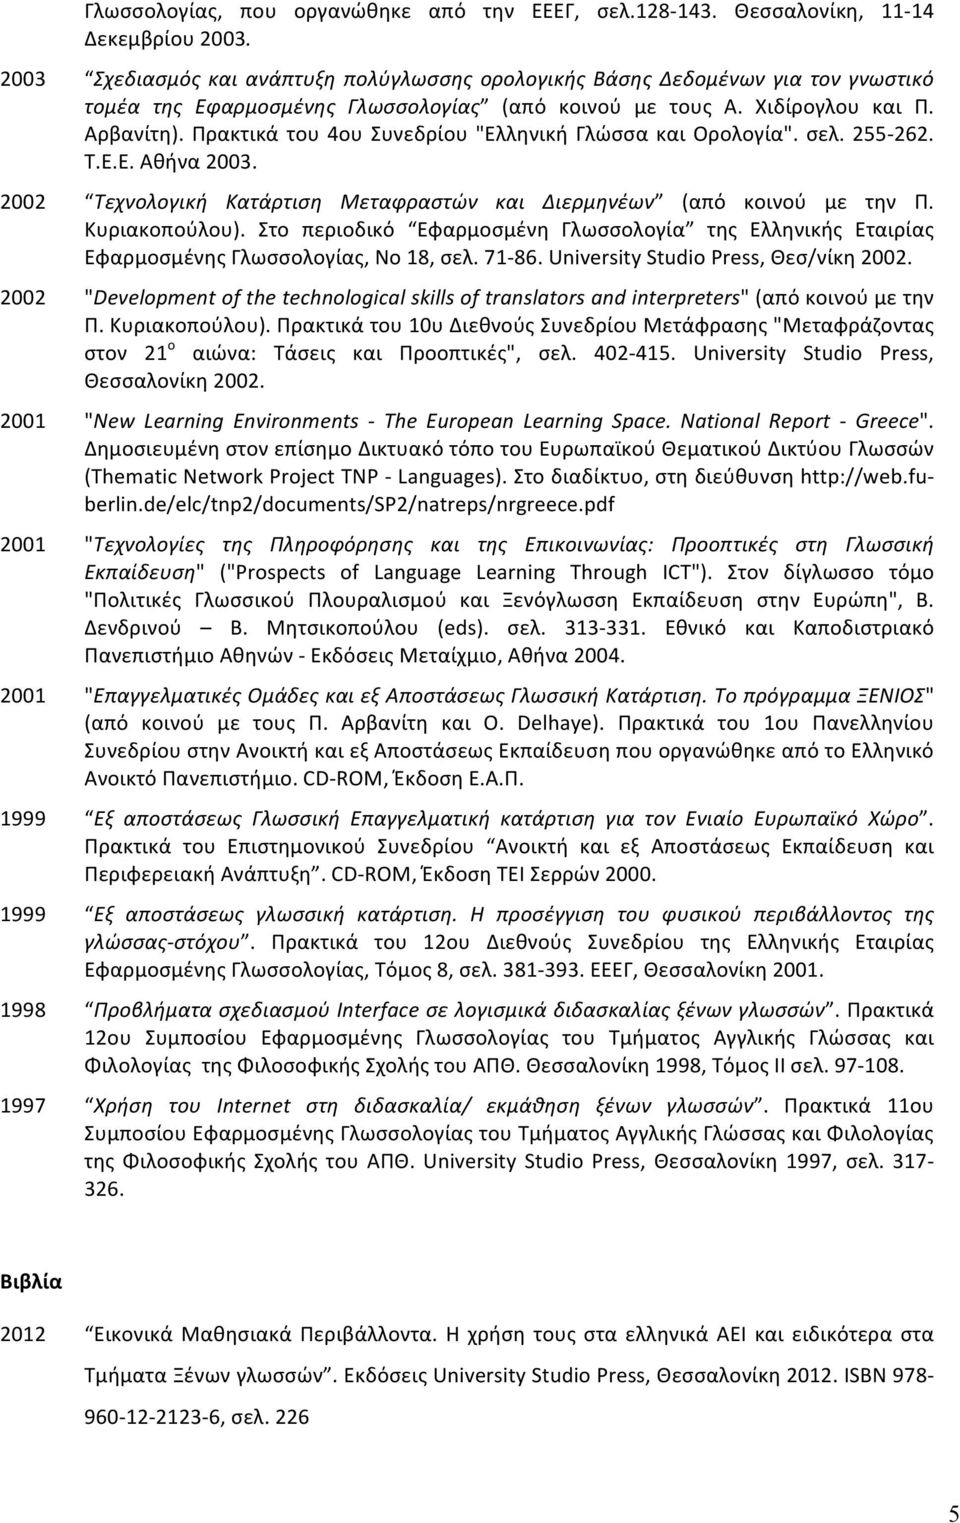 Πρακτικά του 4ου Συνεδρίου "Ελληνική Γλώσσα και Ορολογία". σελ. 255-262. Τ.Ε.Ε. Αθήνα 2003. 2002 Τεχνολογική Κατάρτιση Μεταφραστών και Διερμηνέων (από κοινού με την Π. Κυριακοπούλου).